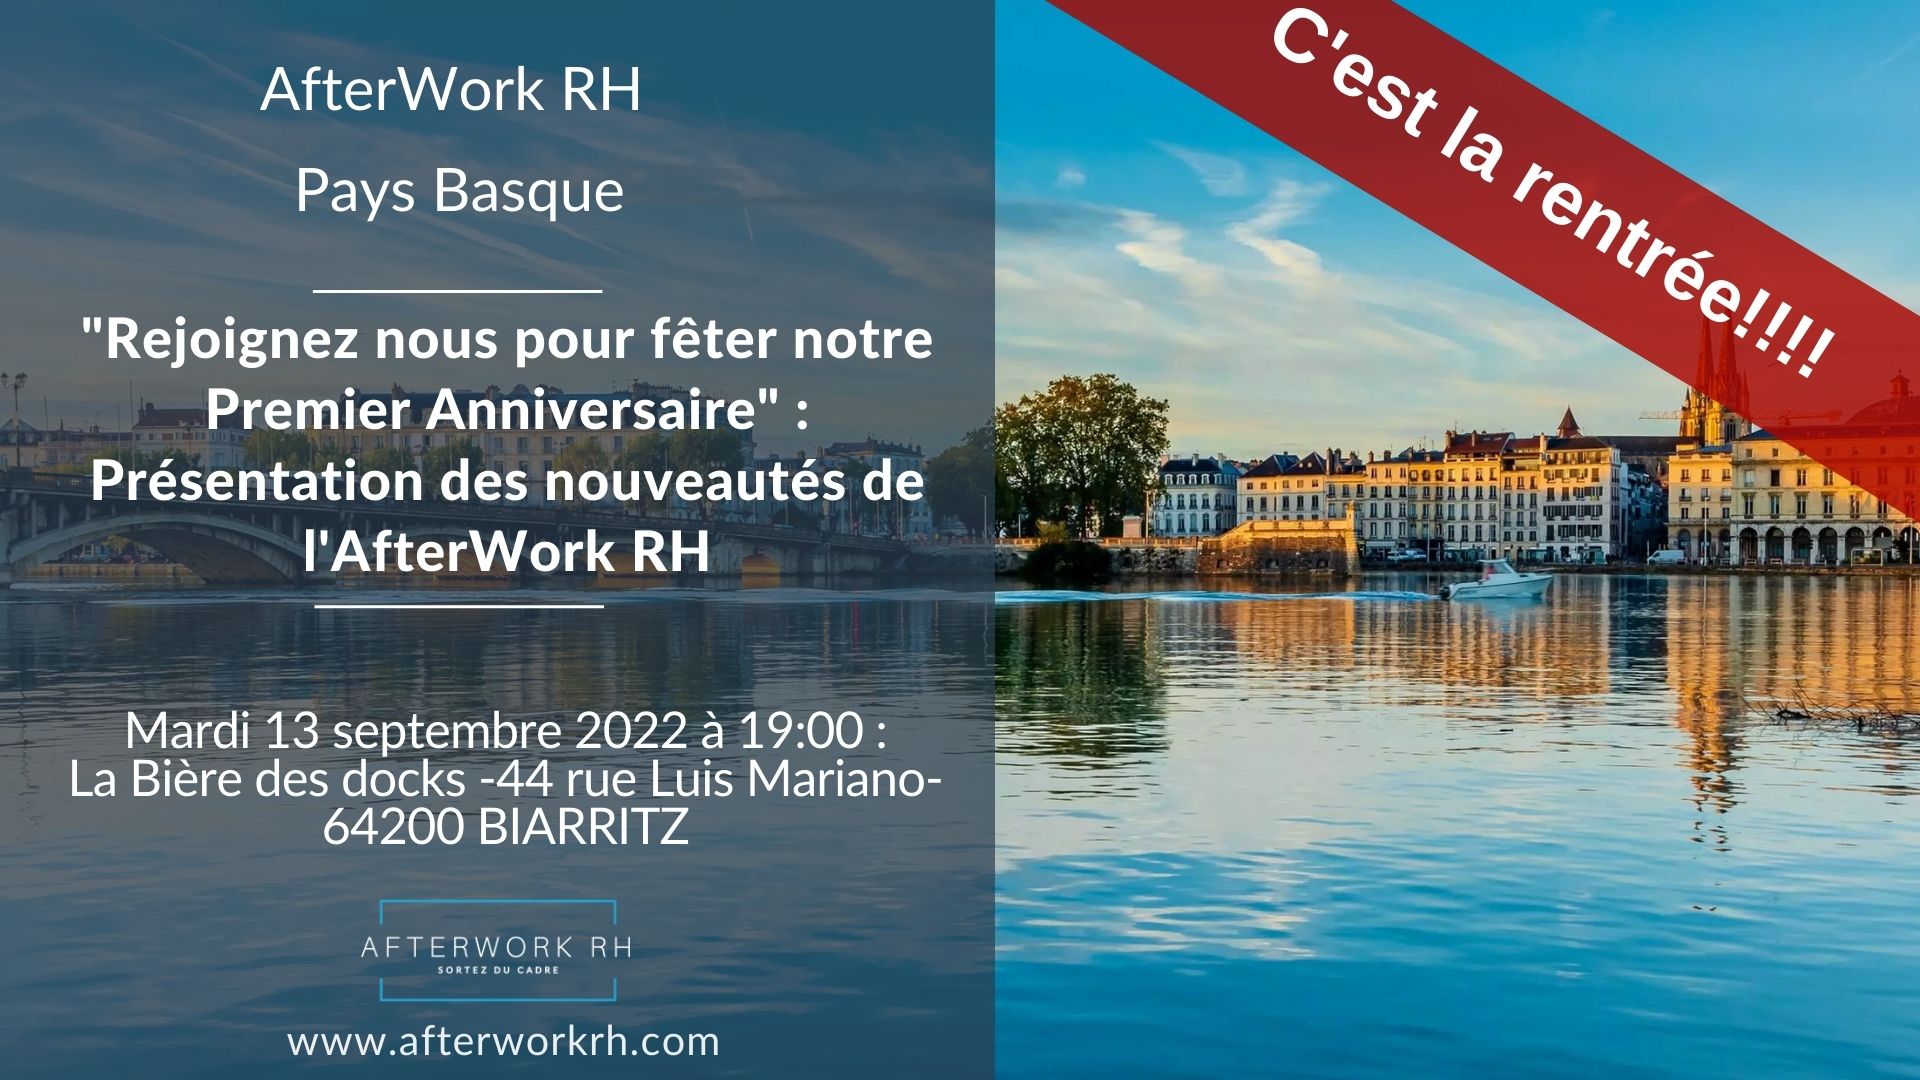 Bandeau de présentation du prochain AfterWork RH Pays Basque pour septembre 2022